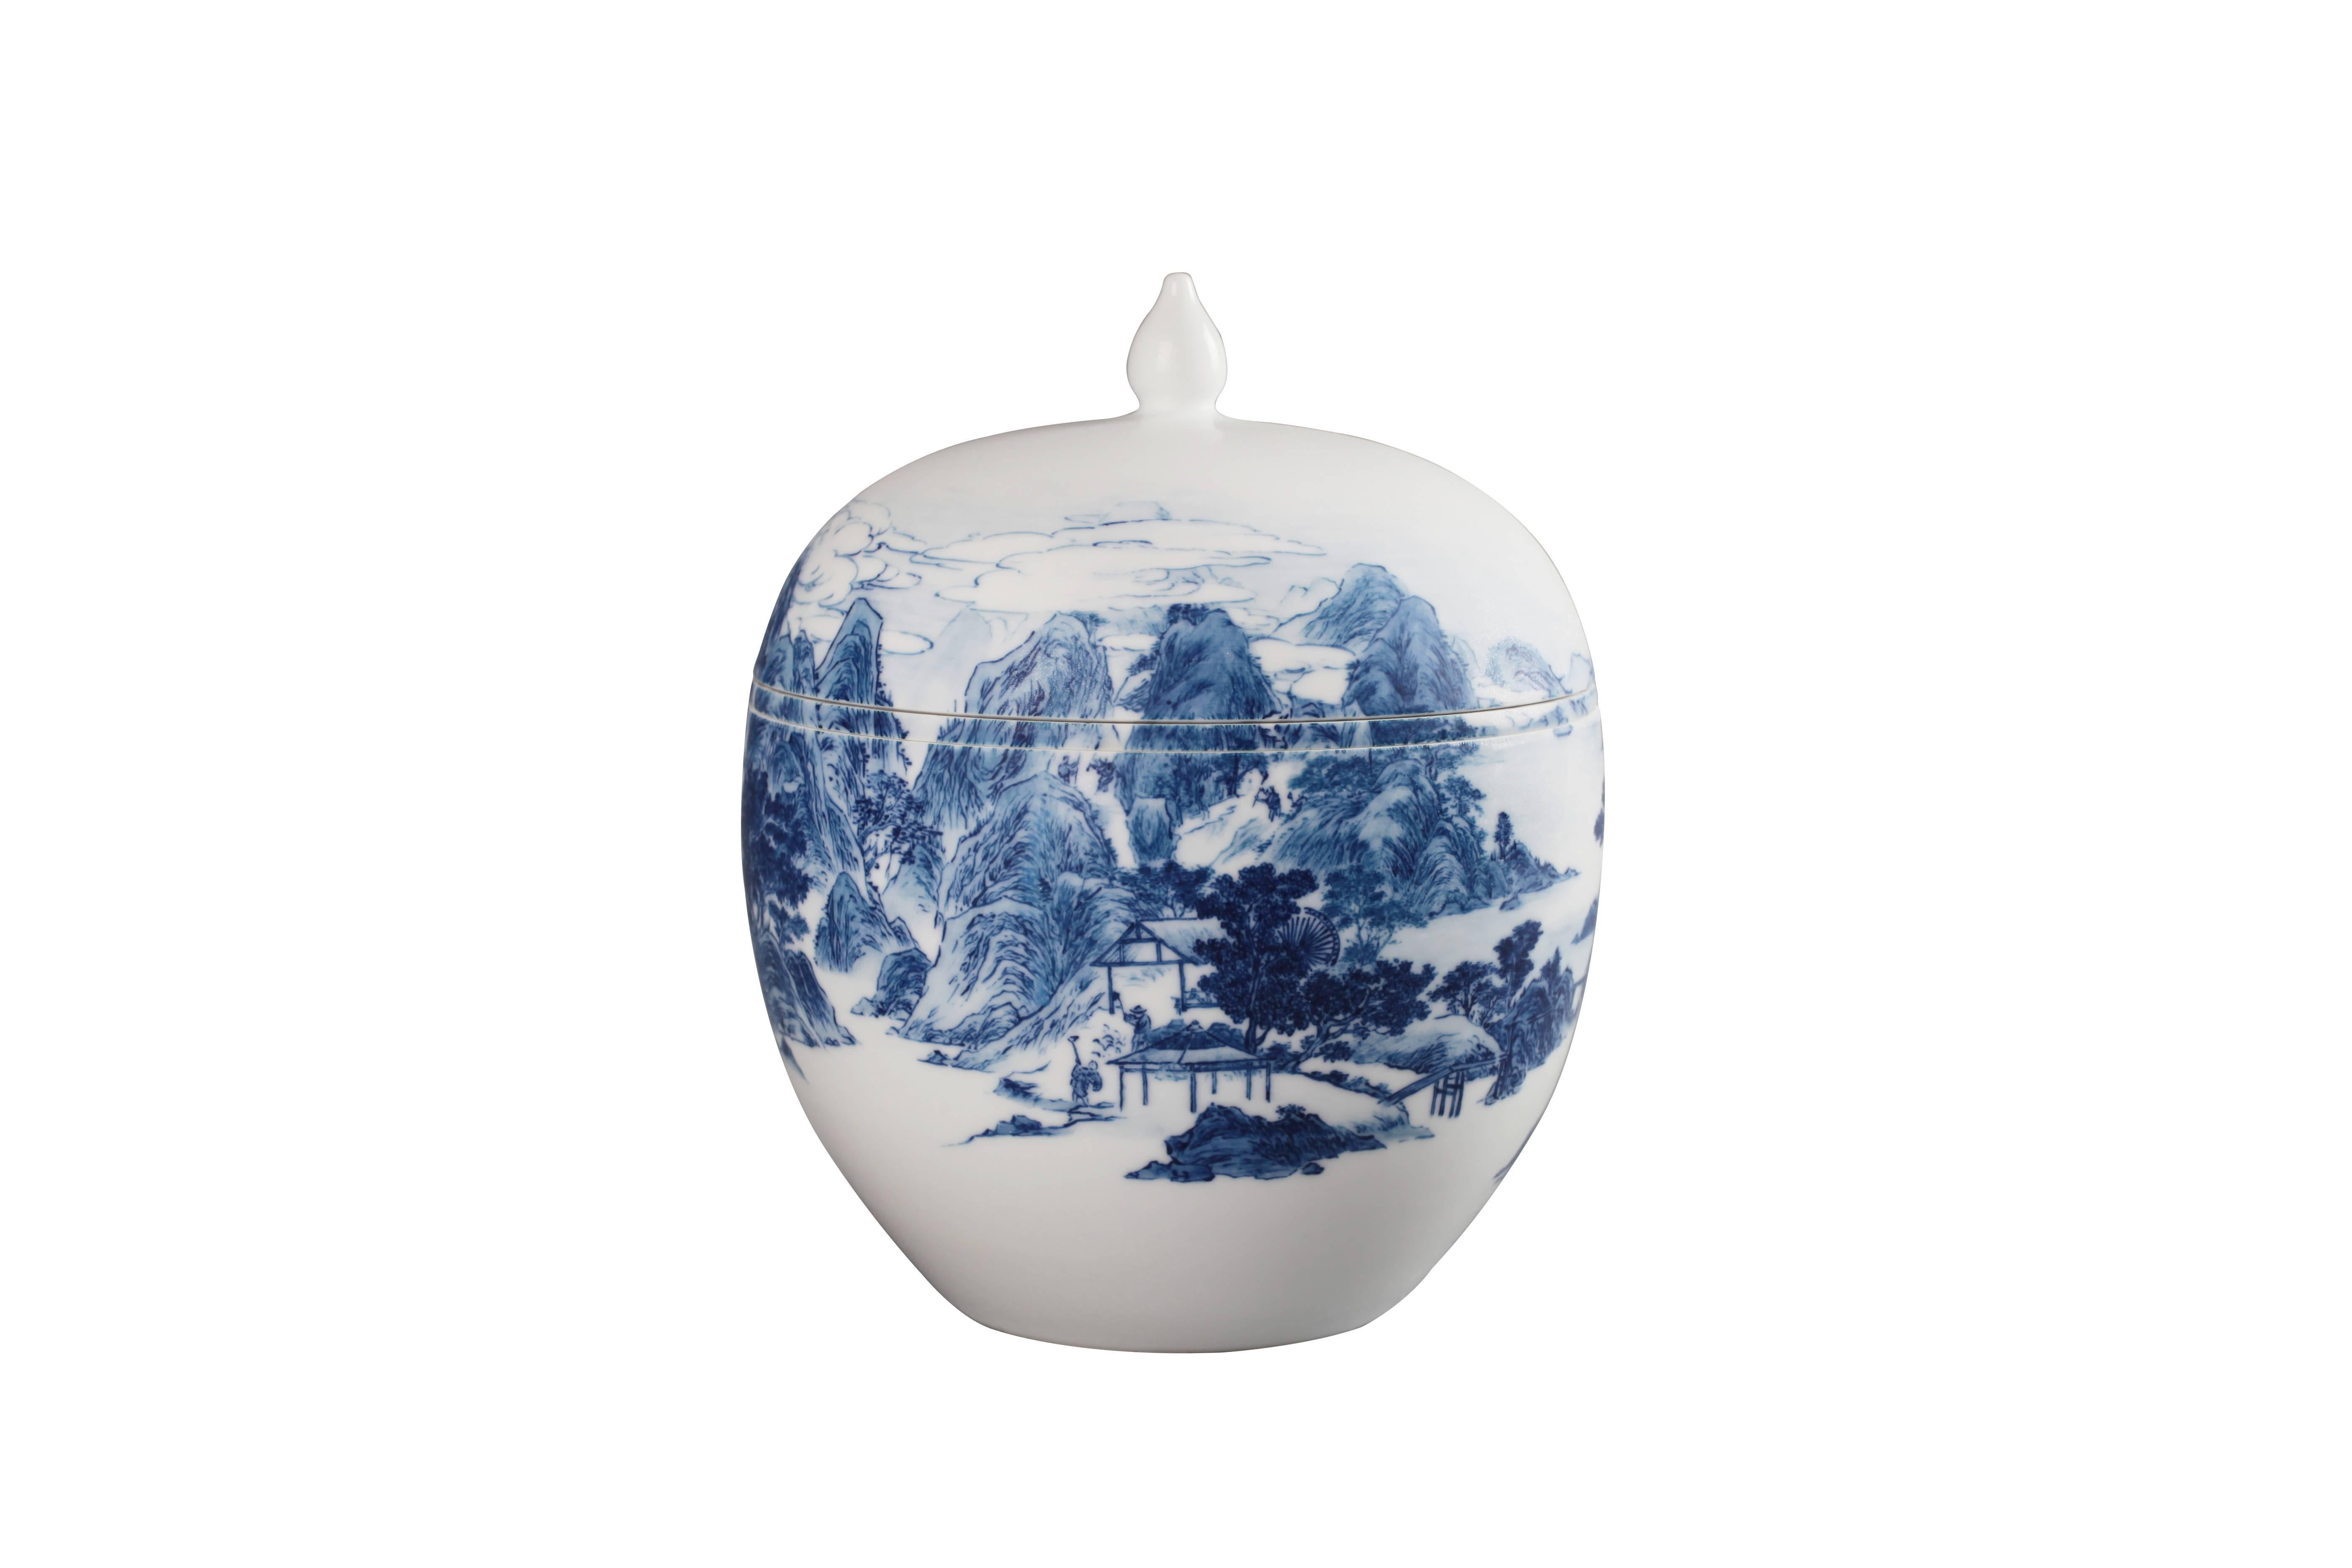 Contemporary The Kaolin Mines #1 Porcelain Bowl by Zhenhan Hao